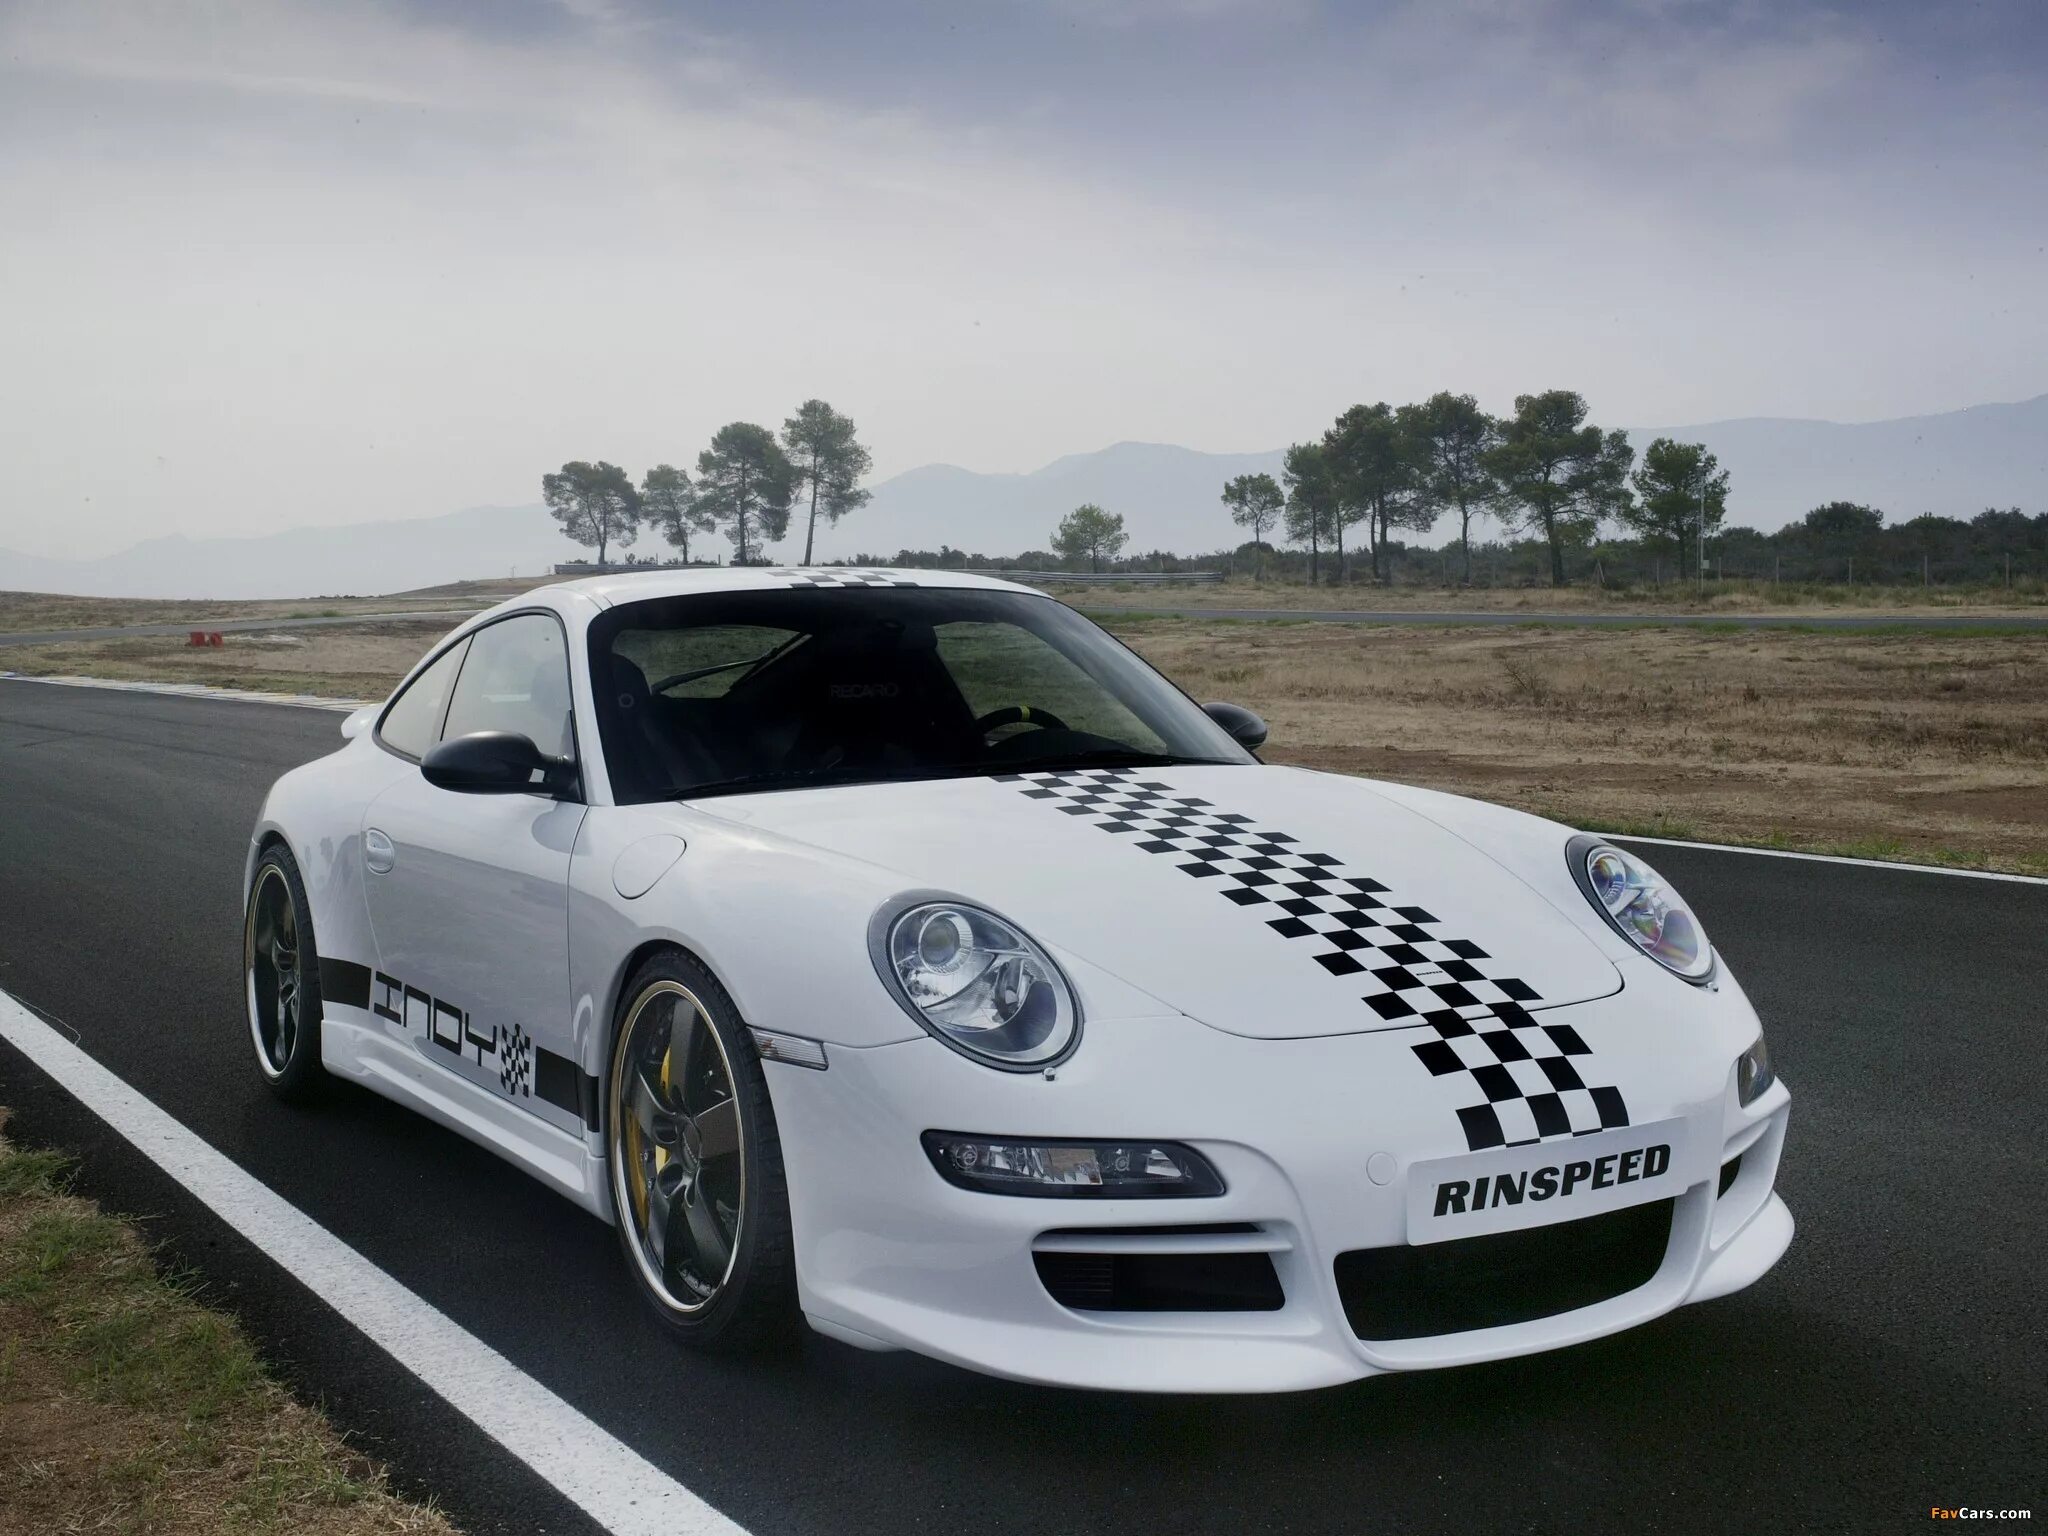 Porsche 911 Rinspeed. Rinspeed Porsche 997 Indy. Porsche 911 Mansory. Mansory Porsche 997.